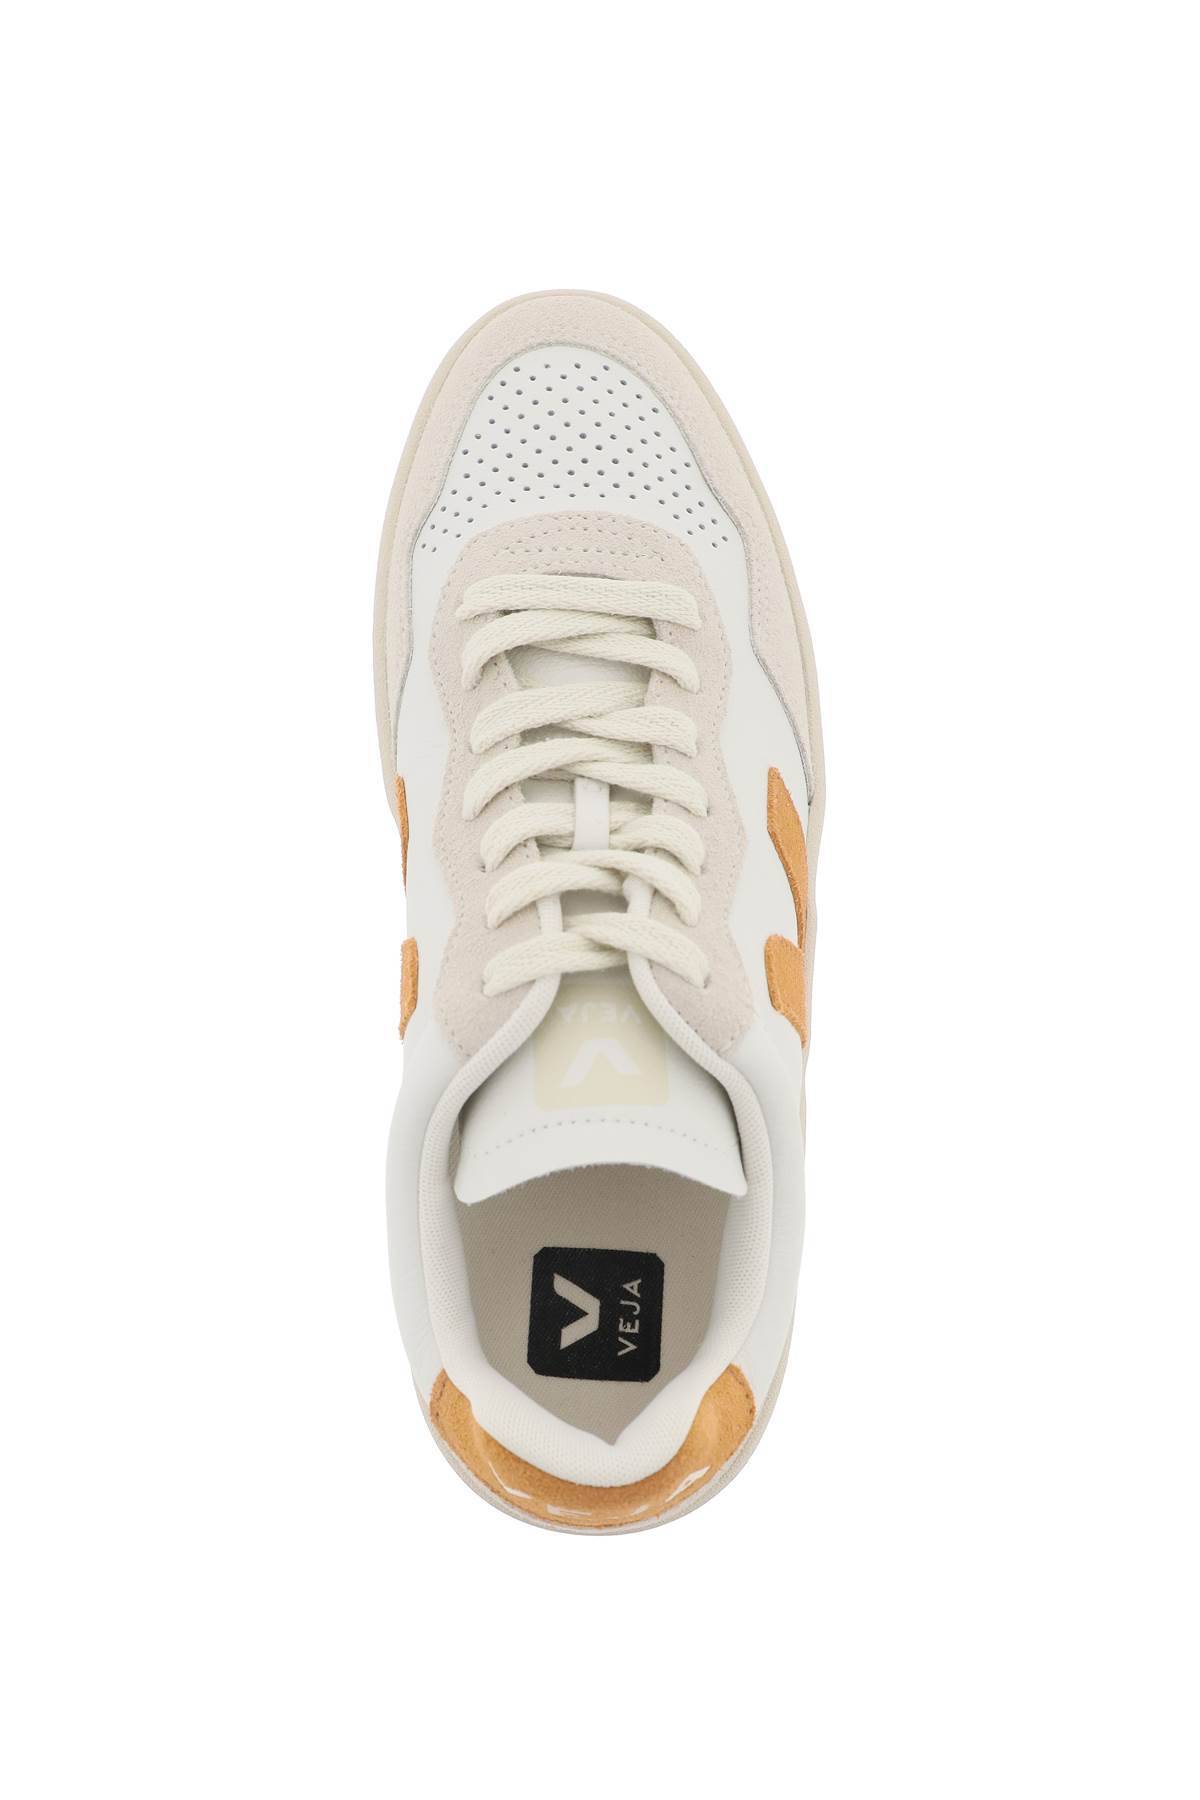 Shop Veja Leather V-90 Sne In White,beige,orange